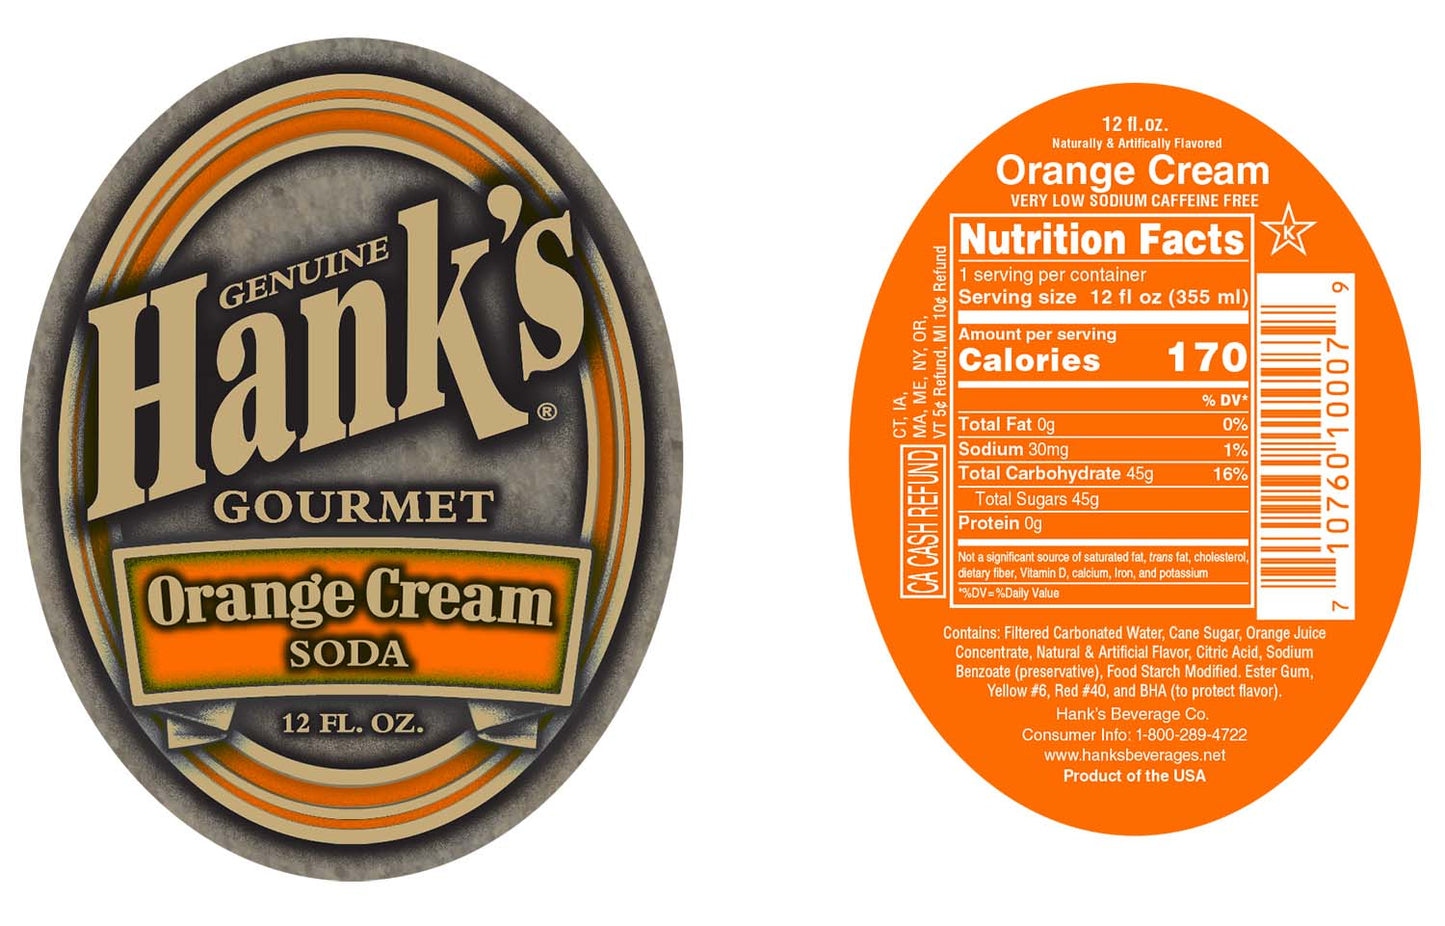 Hank's Premium Orange Cream